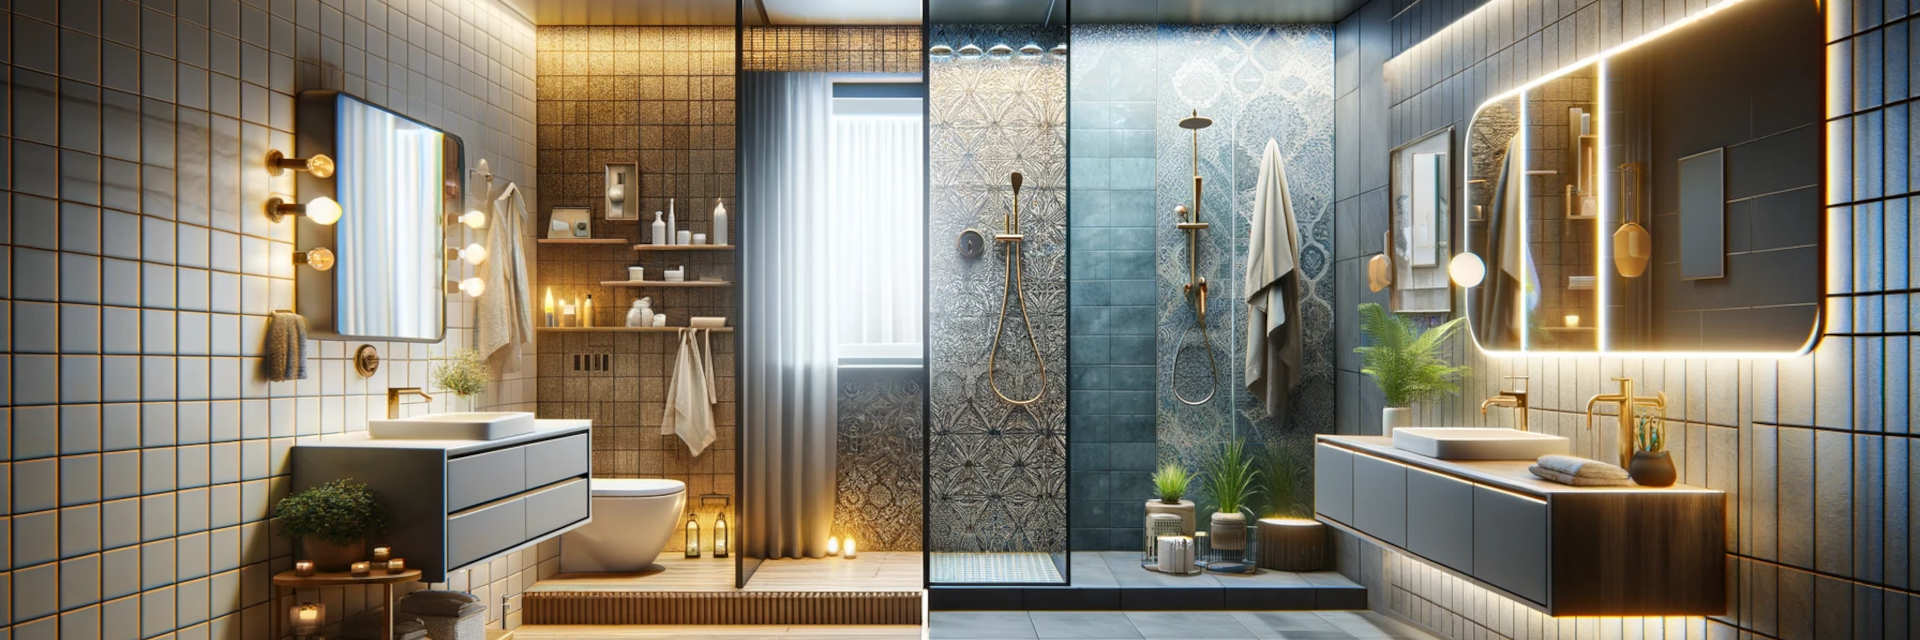 Uma cena de transformação elegante e moderna na casa de banho